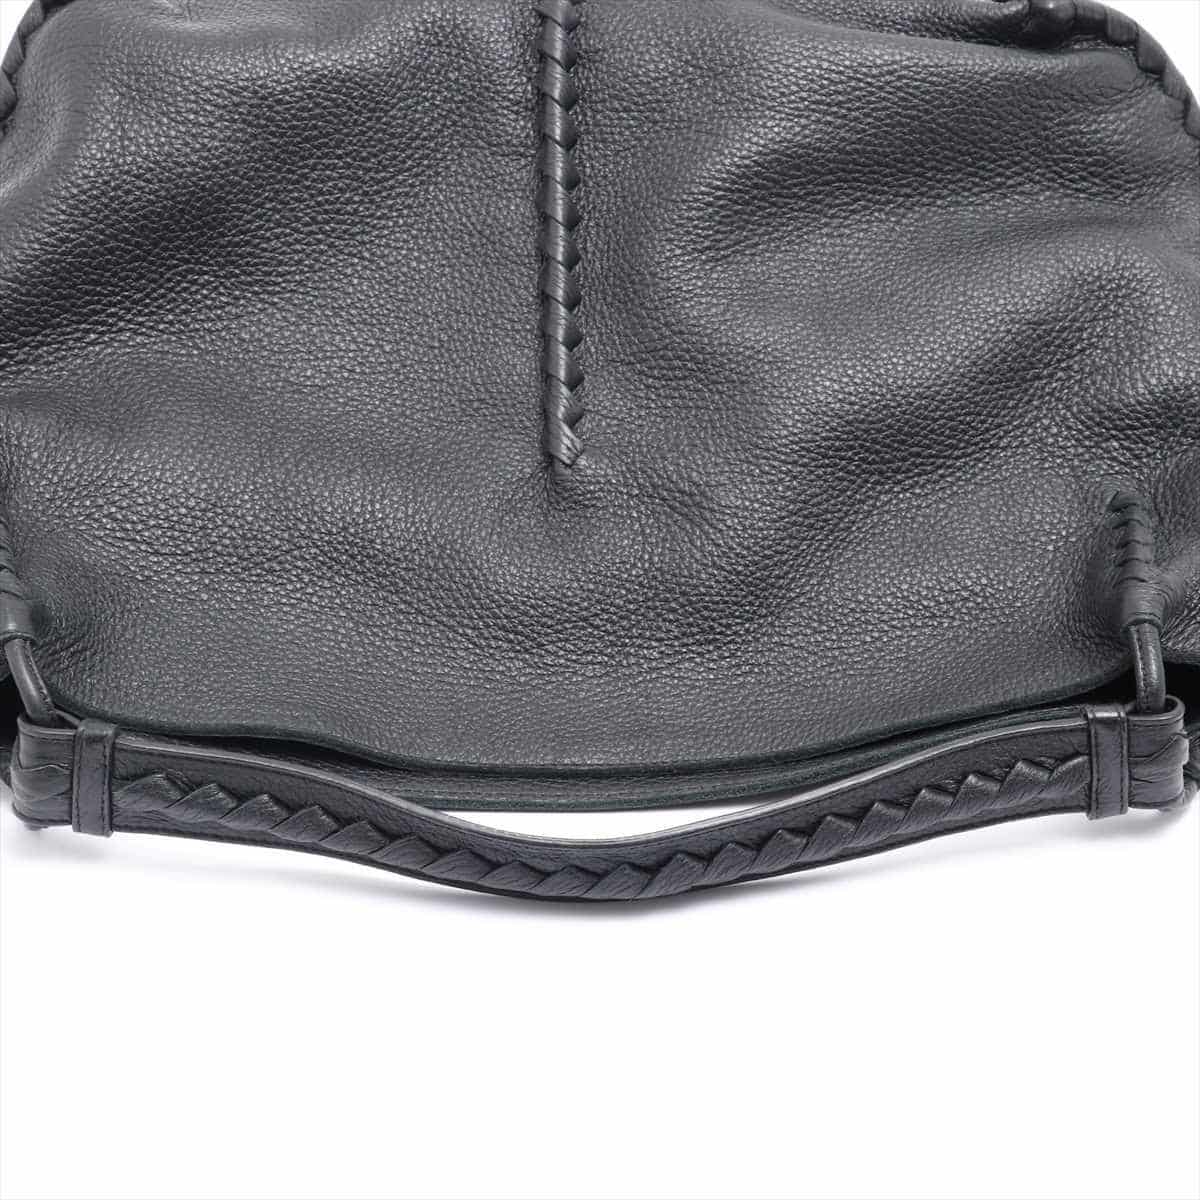 Bottega Veneta Cervo Leather Shoulder bag Black